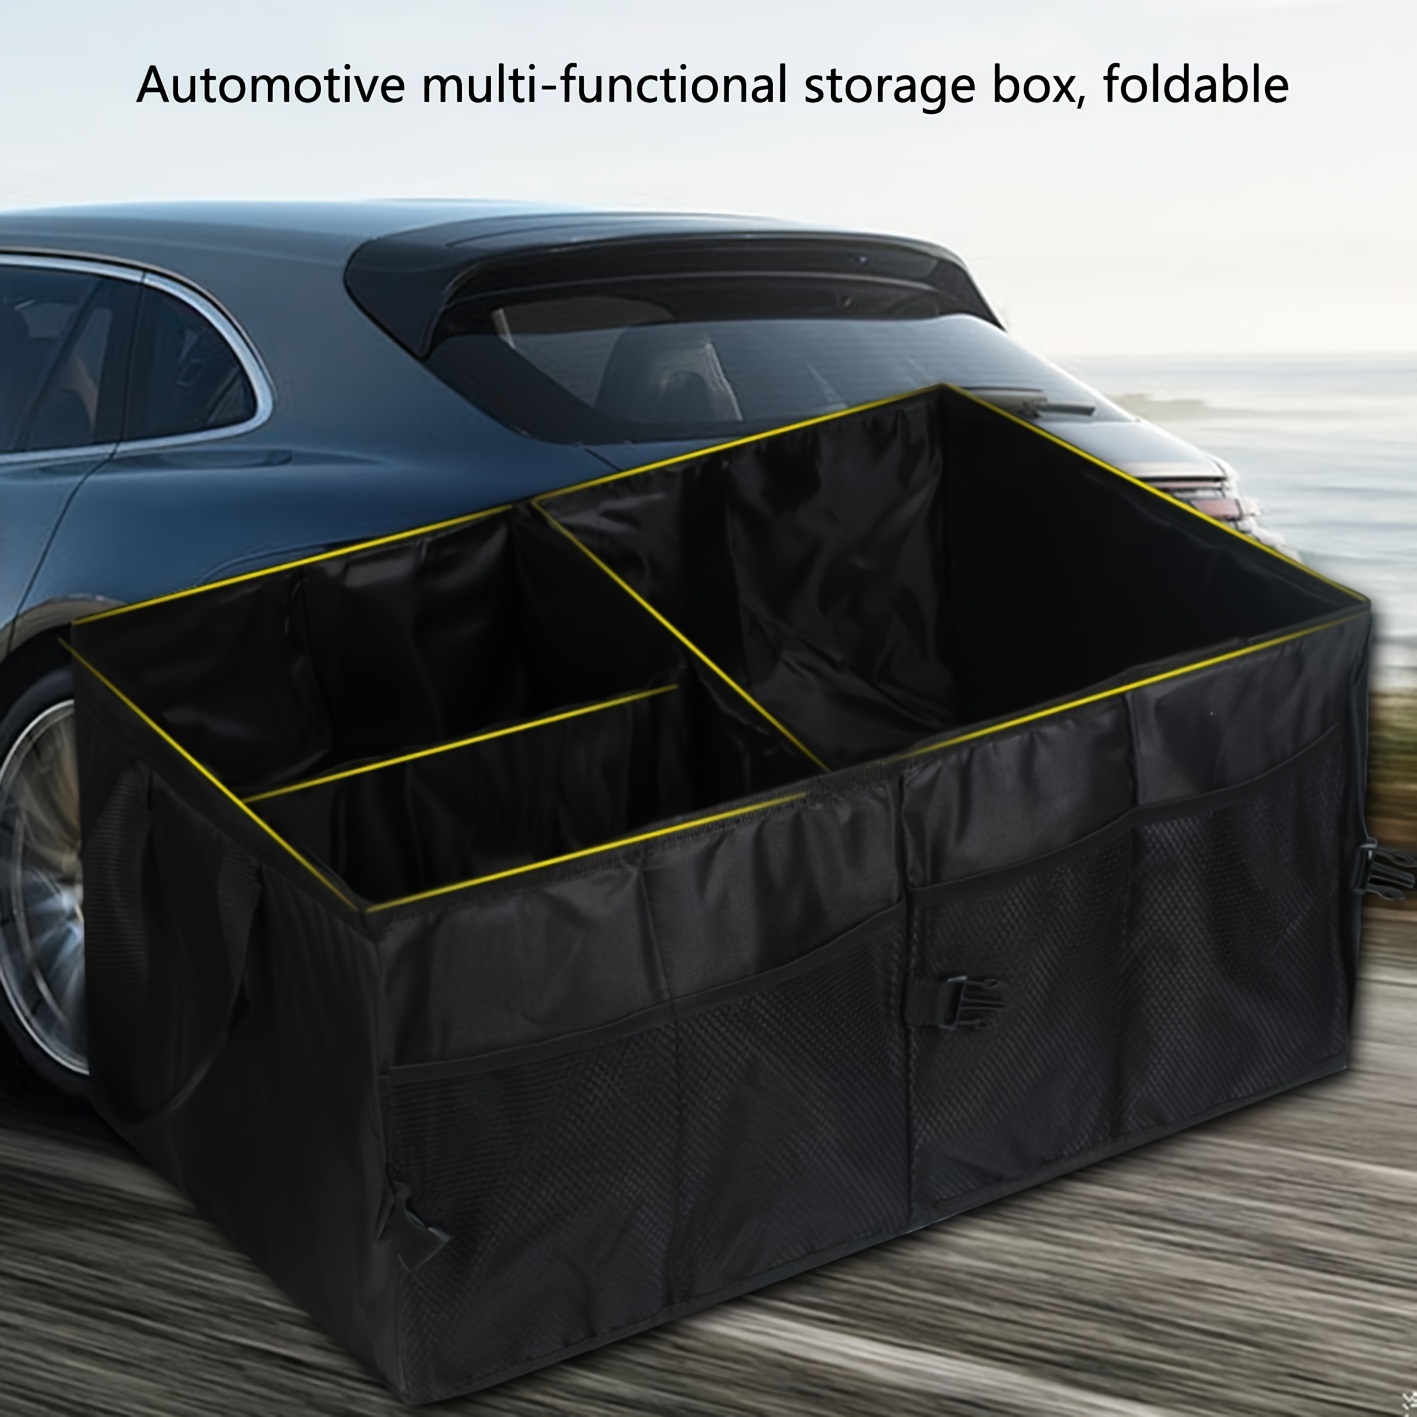 Leermoo Auto aufbewahrungsbox Kofferraum organizer boxen – - Temu